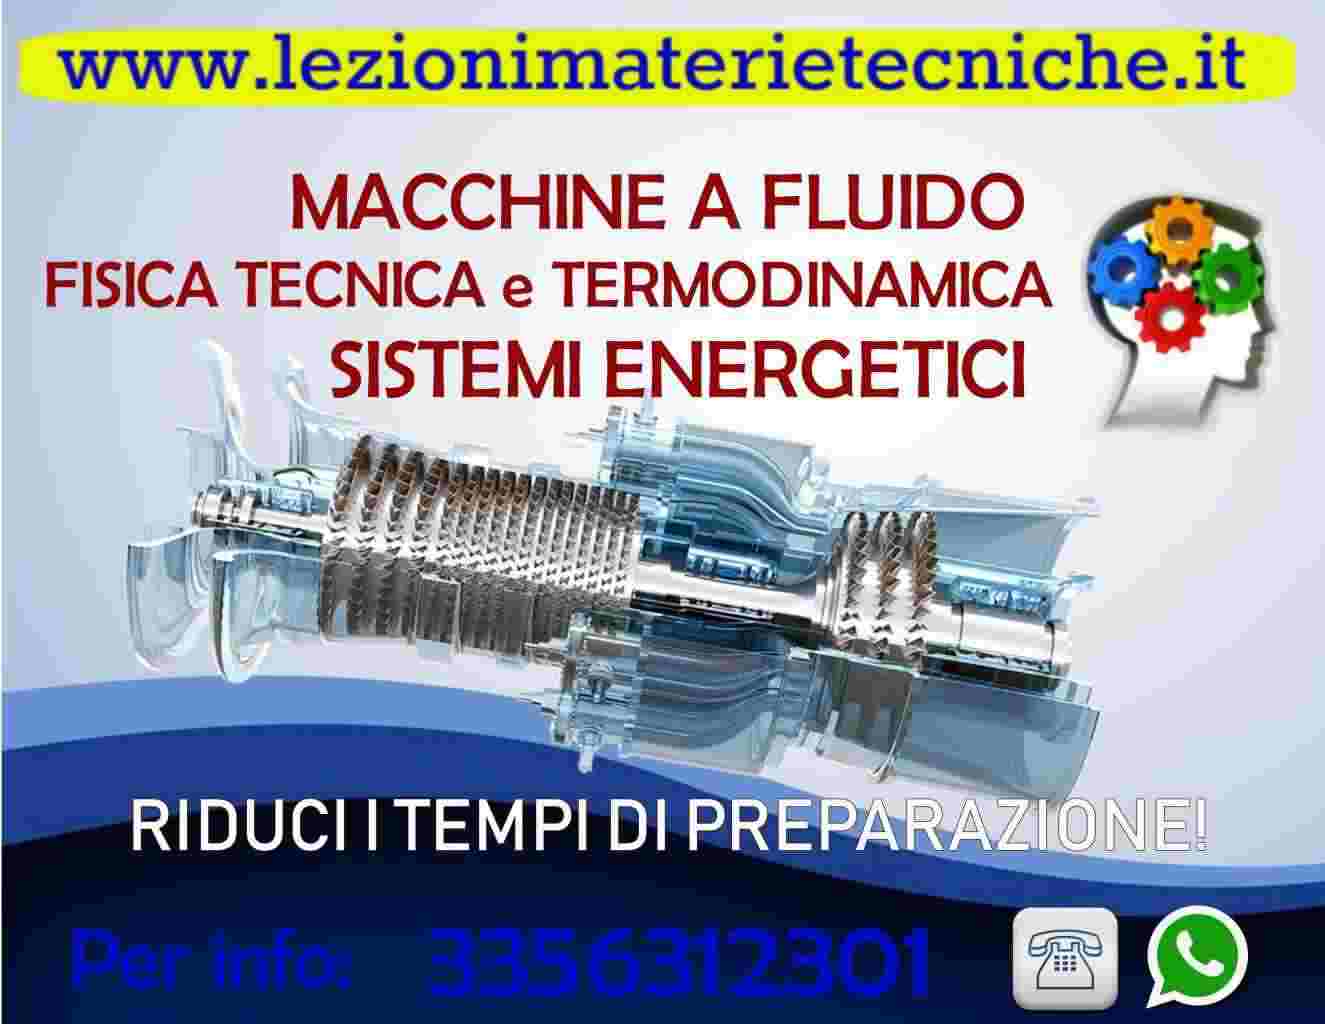 Macchine a fluido, Fisica Tecnica, Sistemi energetici